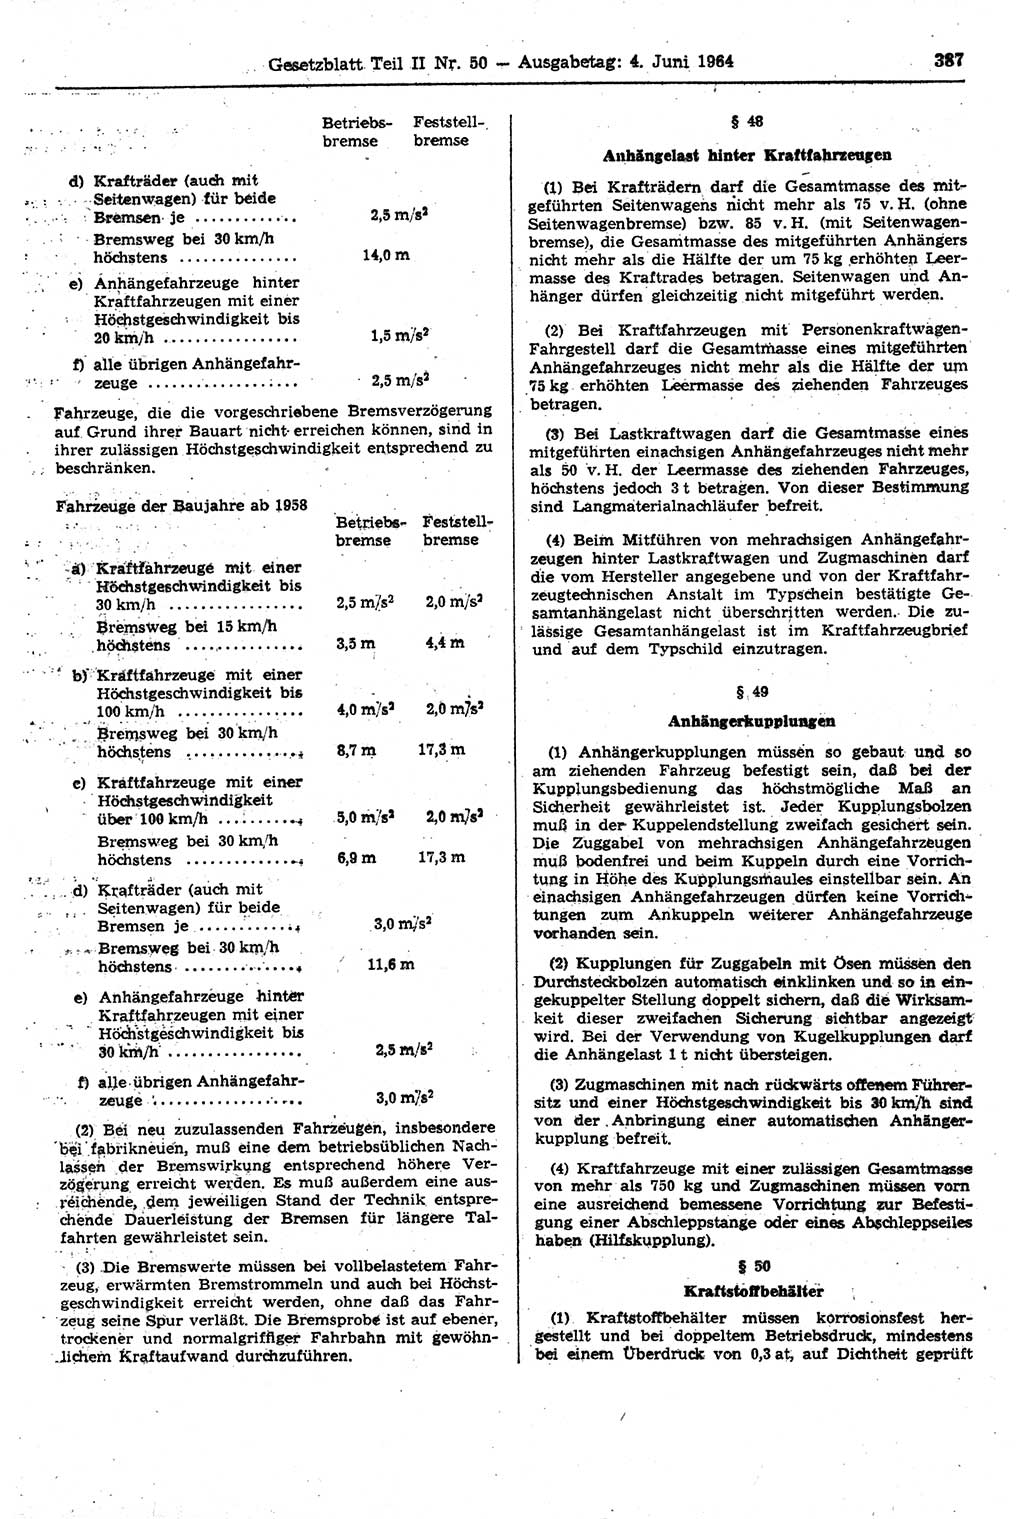 Gesetzblatt (GBl.) der Deutschen Demokratischen Republik (DDR) Teil ⅠⅠ 1964, Seite 387 (GBl. DDR ⅠⅠ 1964, S. 387)